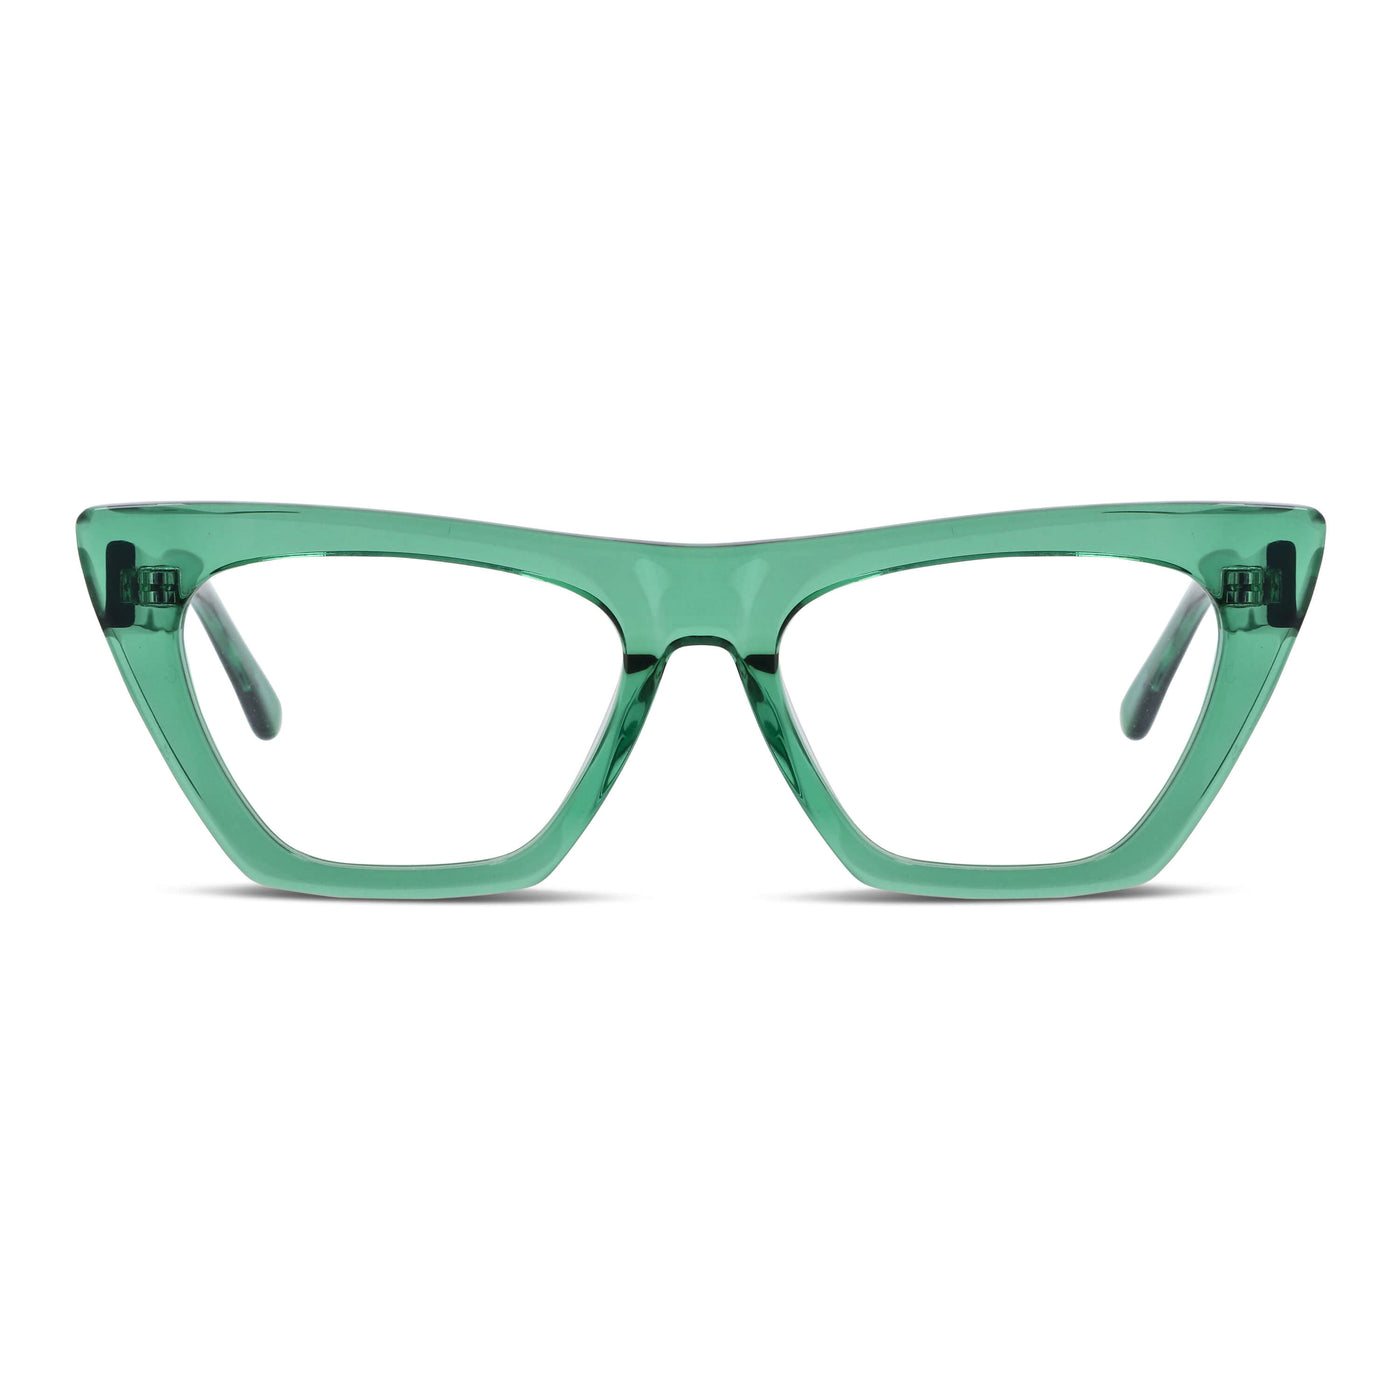  lentes opticos agatados verdes mujer cara redonda grande receta multifocal bifocal adelgazado filtro azul.jpg